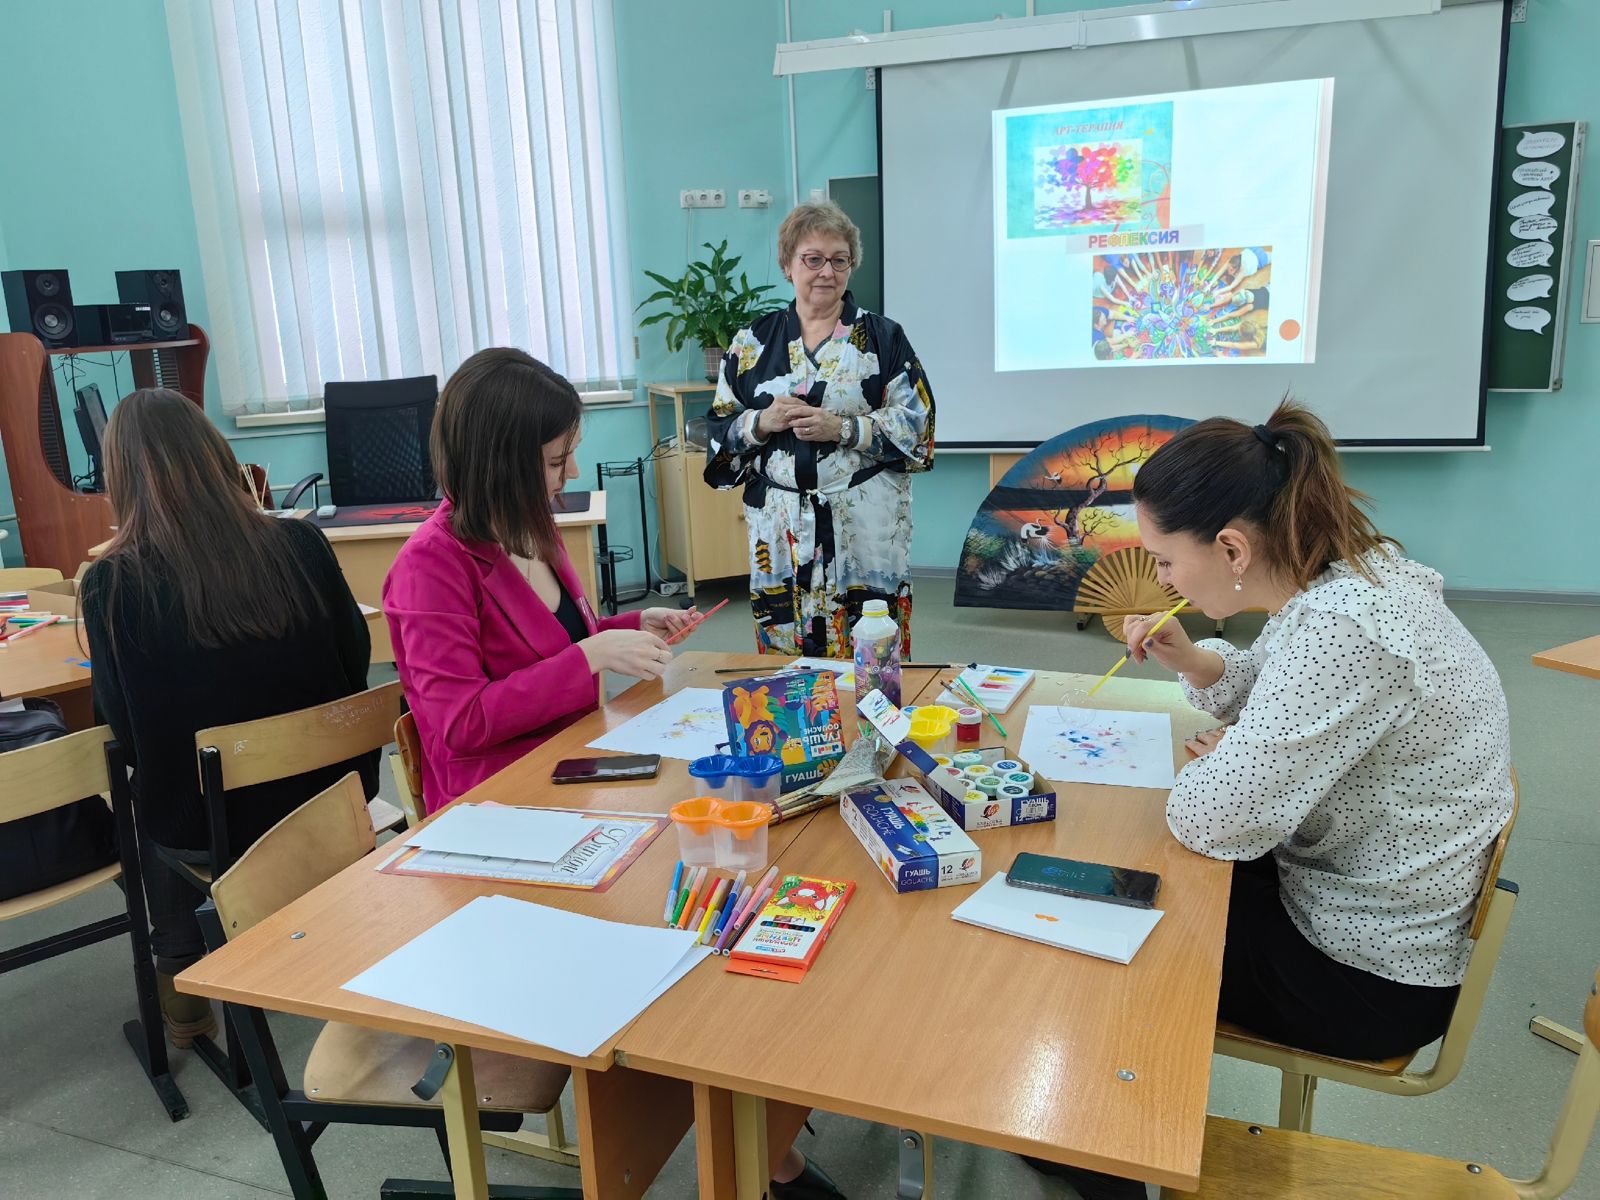 26 января прошел 3 региональный слет наставников и молодых педагогов Московской области «Учитель-учителю». 